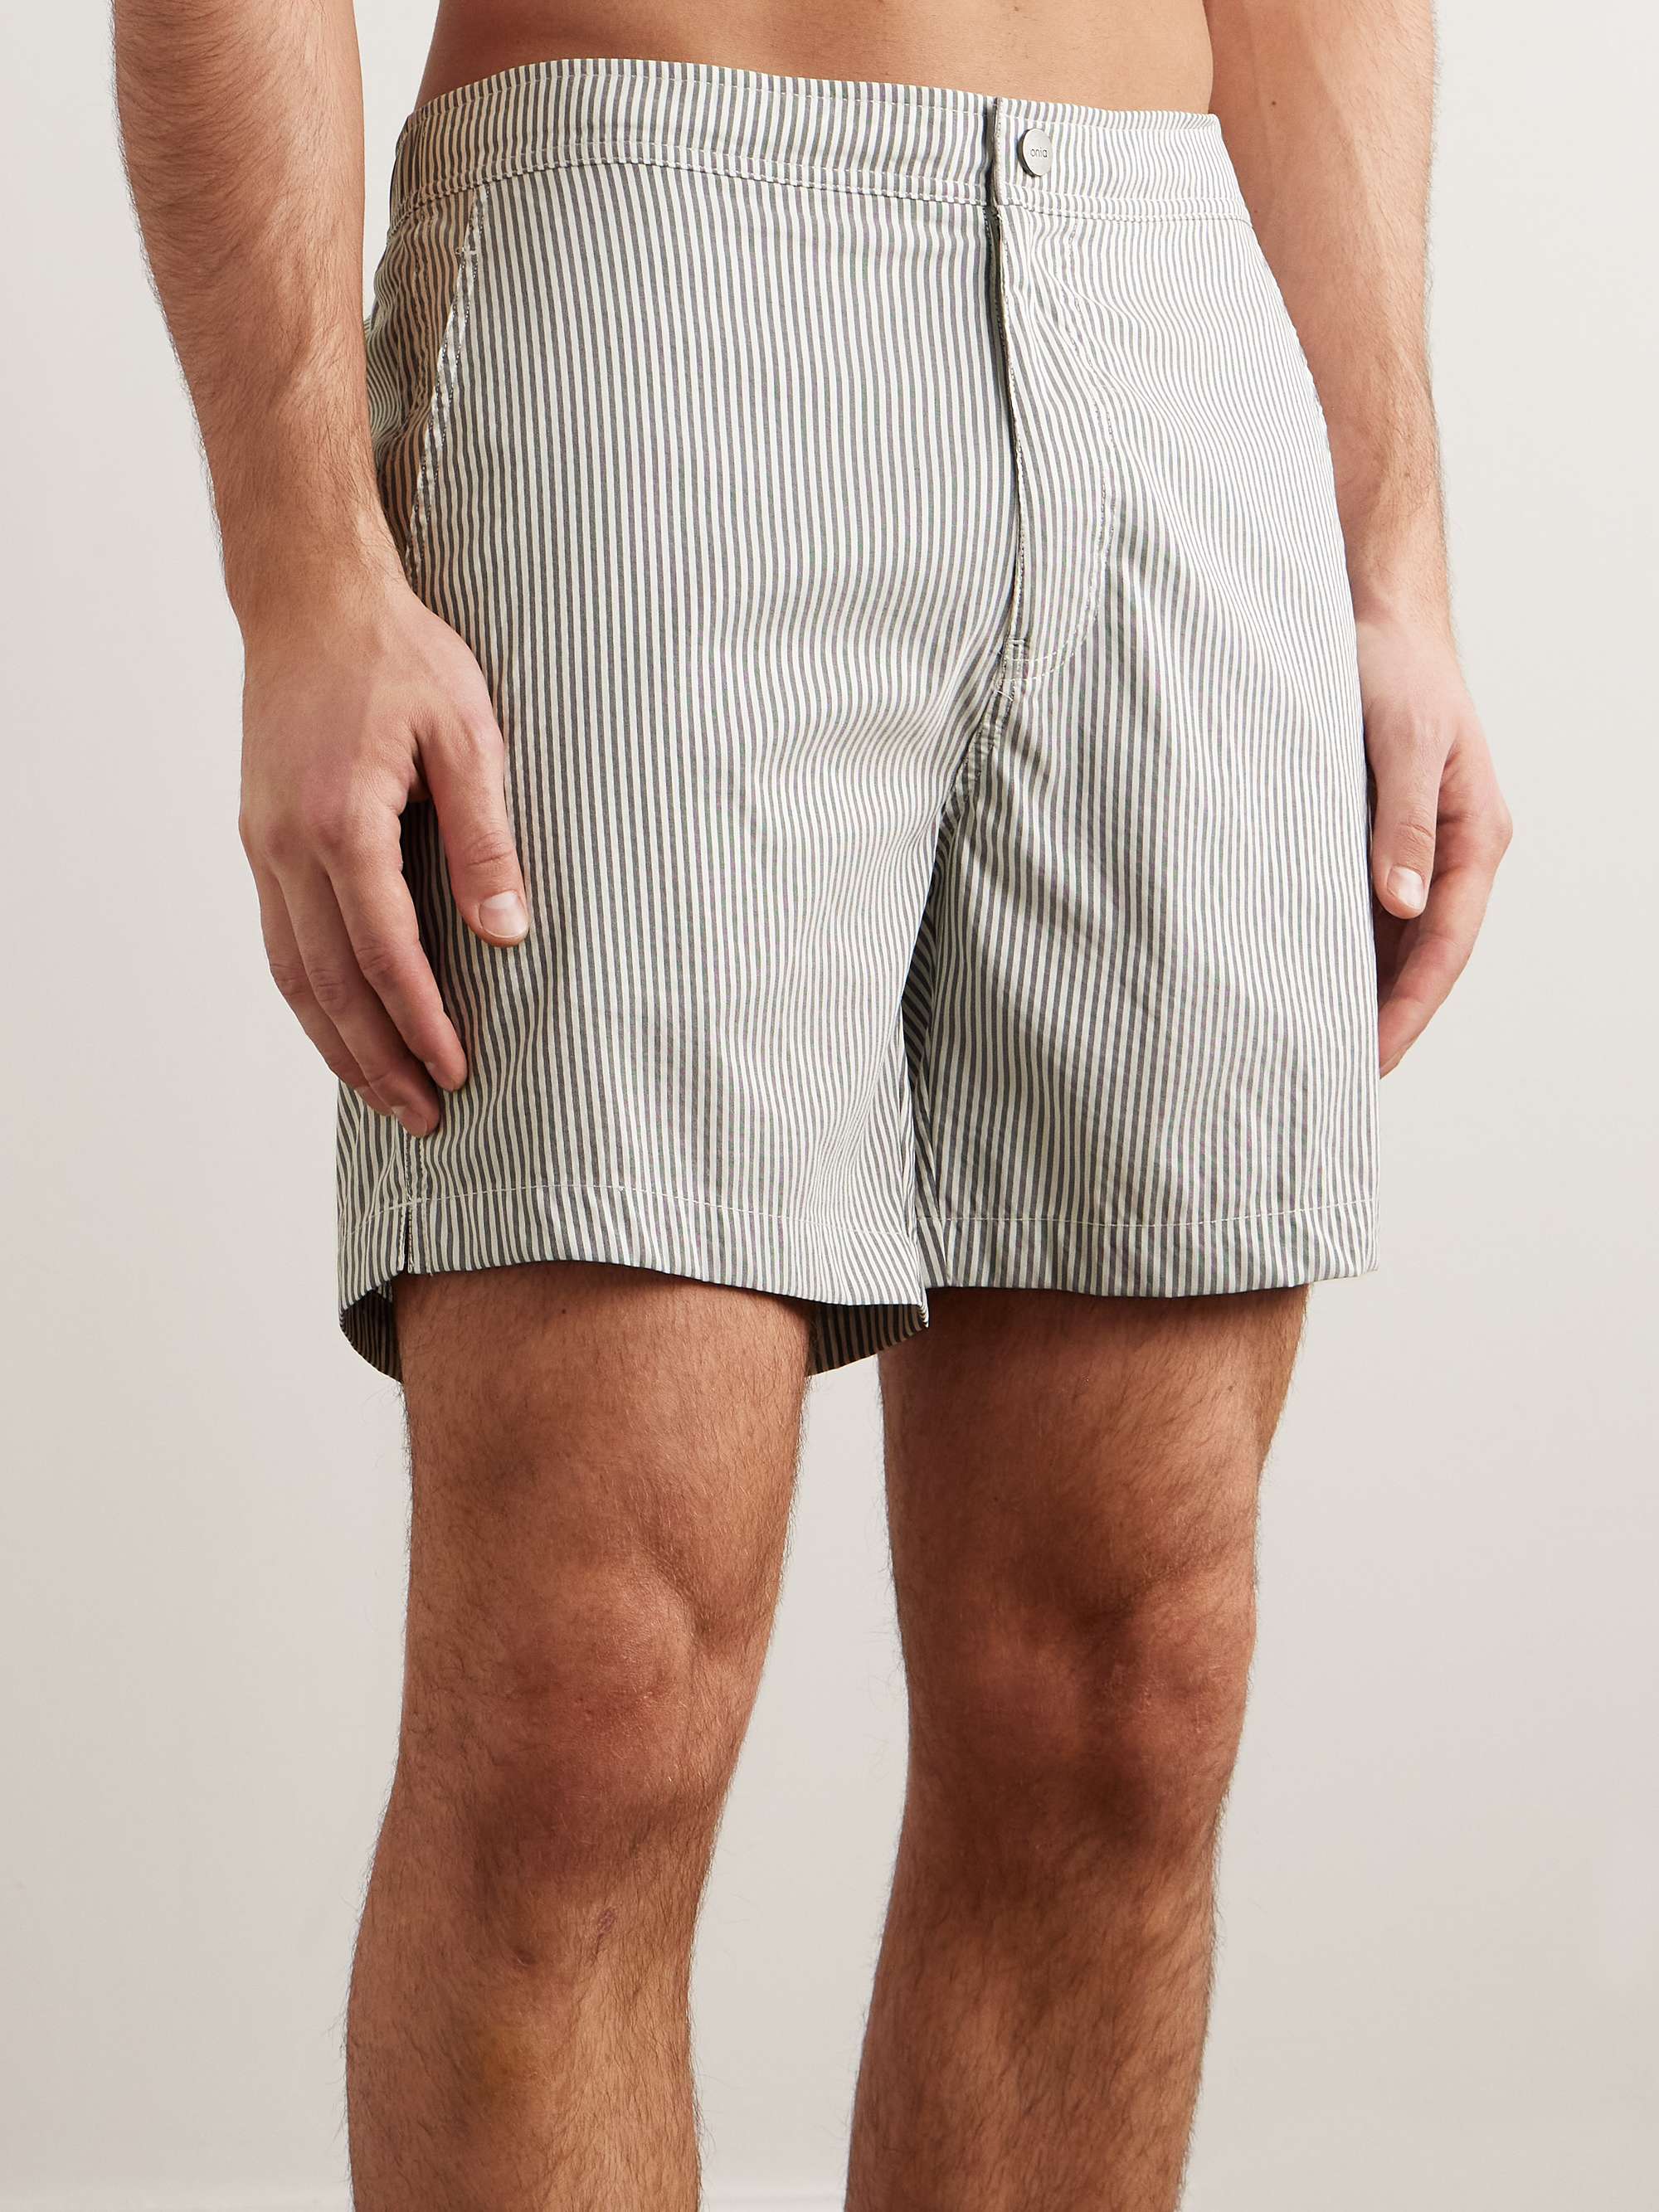 ONIA Calder Straight-Leg Mid-Length Striped Swim Shorts for Men | MR PORTER